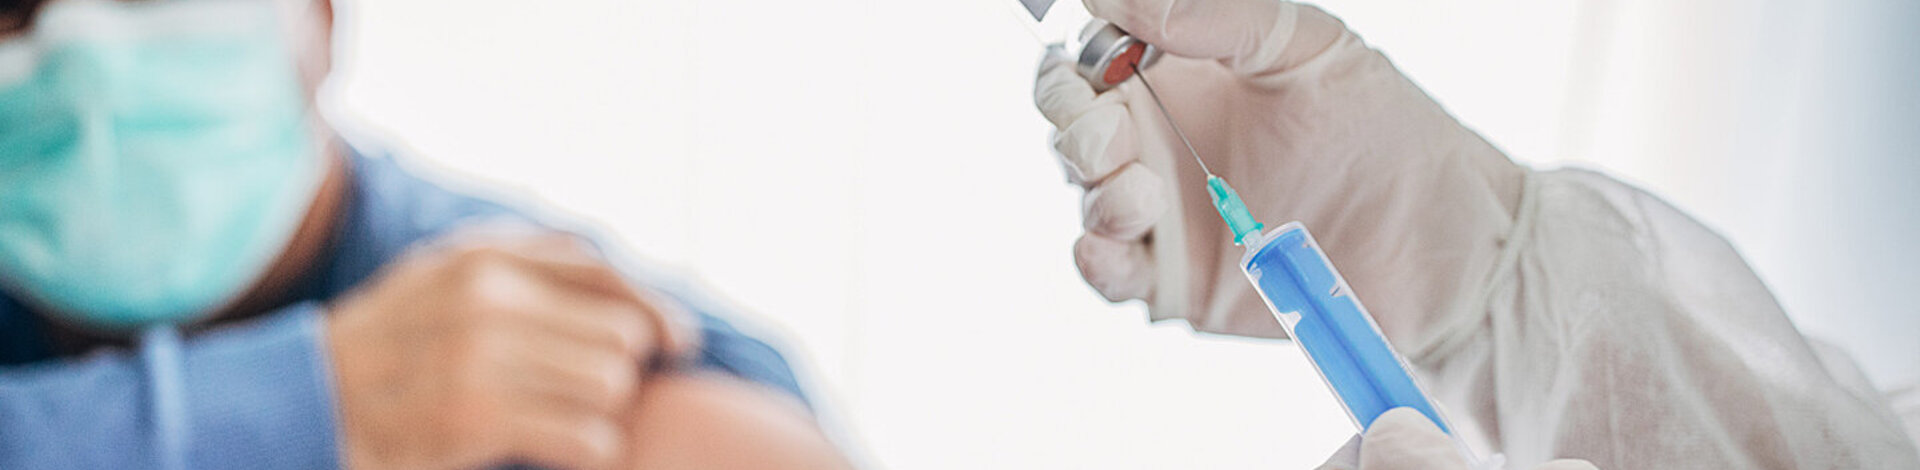 Ein Mann mit Mundschutz sitzt in einer Arztpraxis, im Vordergrund wird eine Spritze aufgezogen.